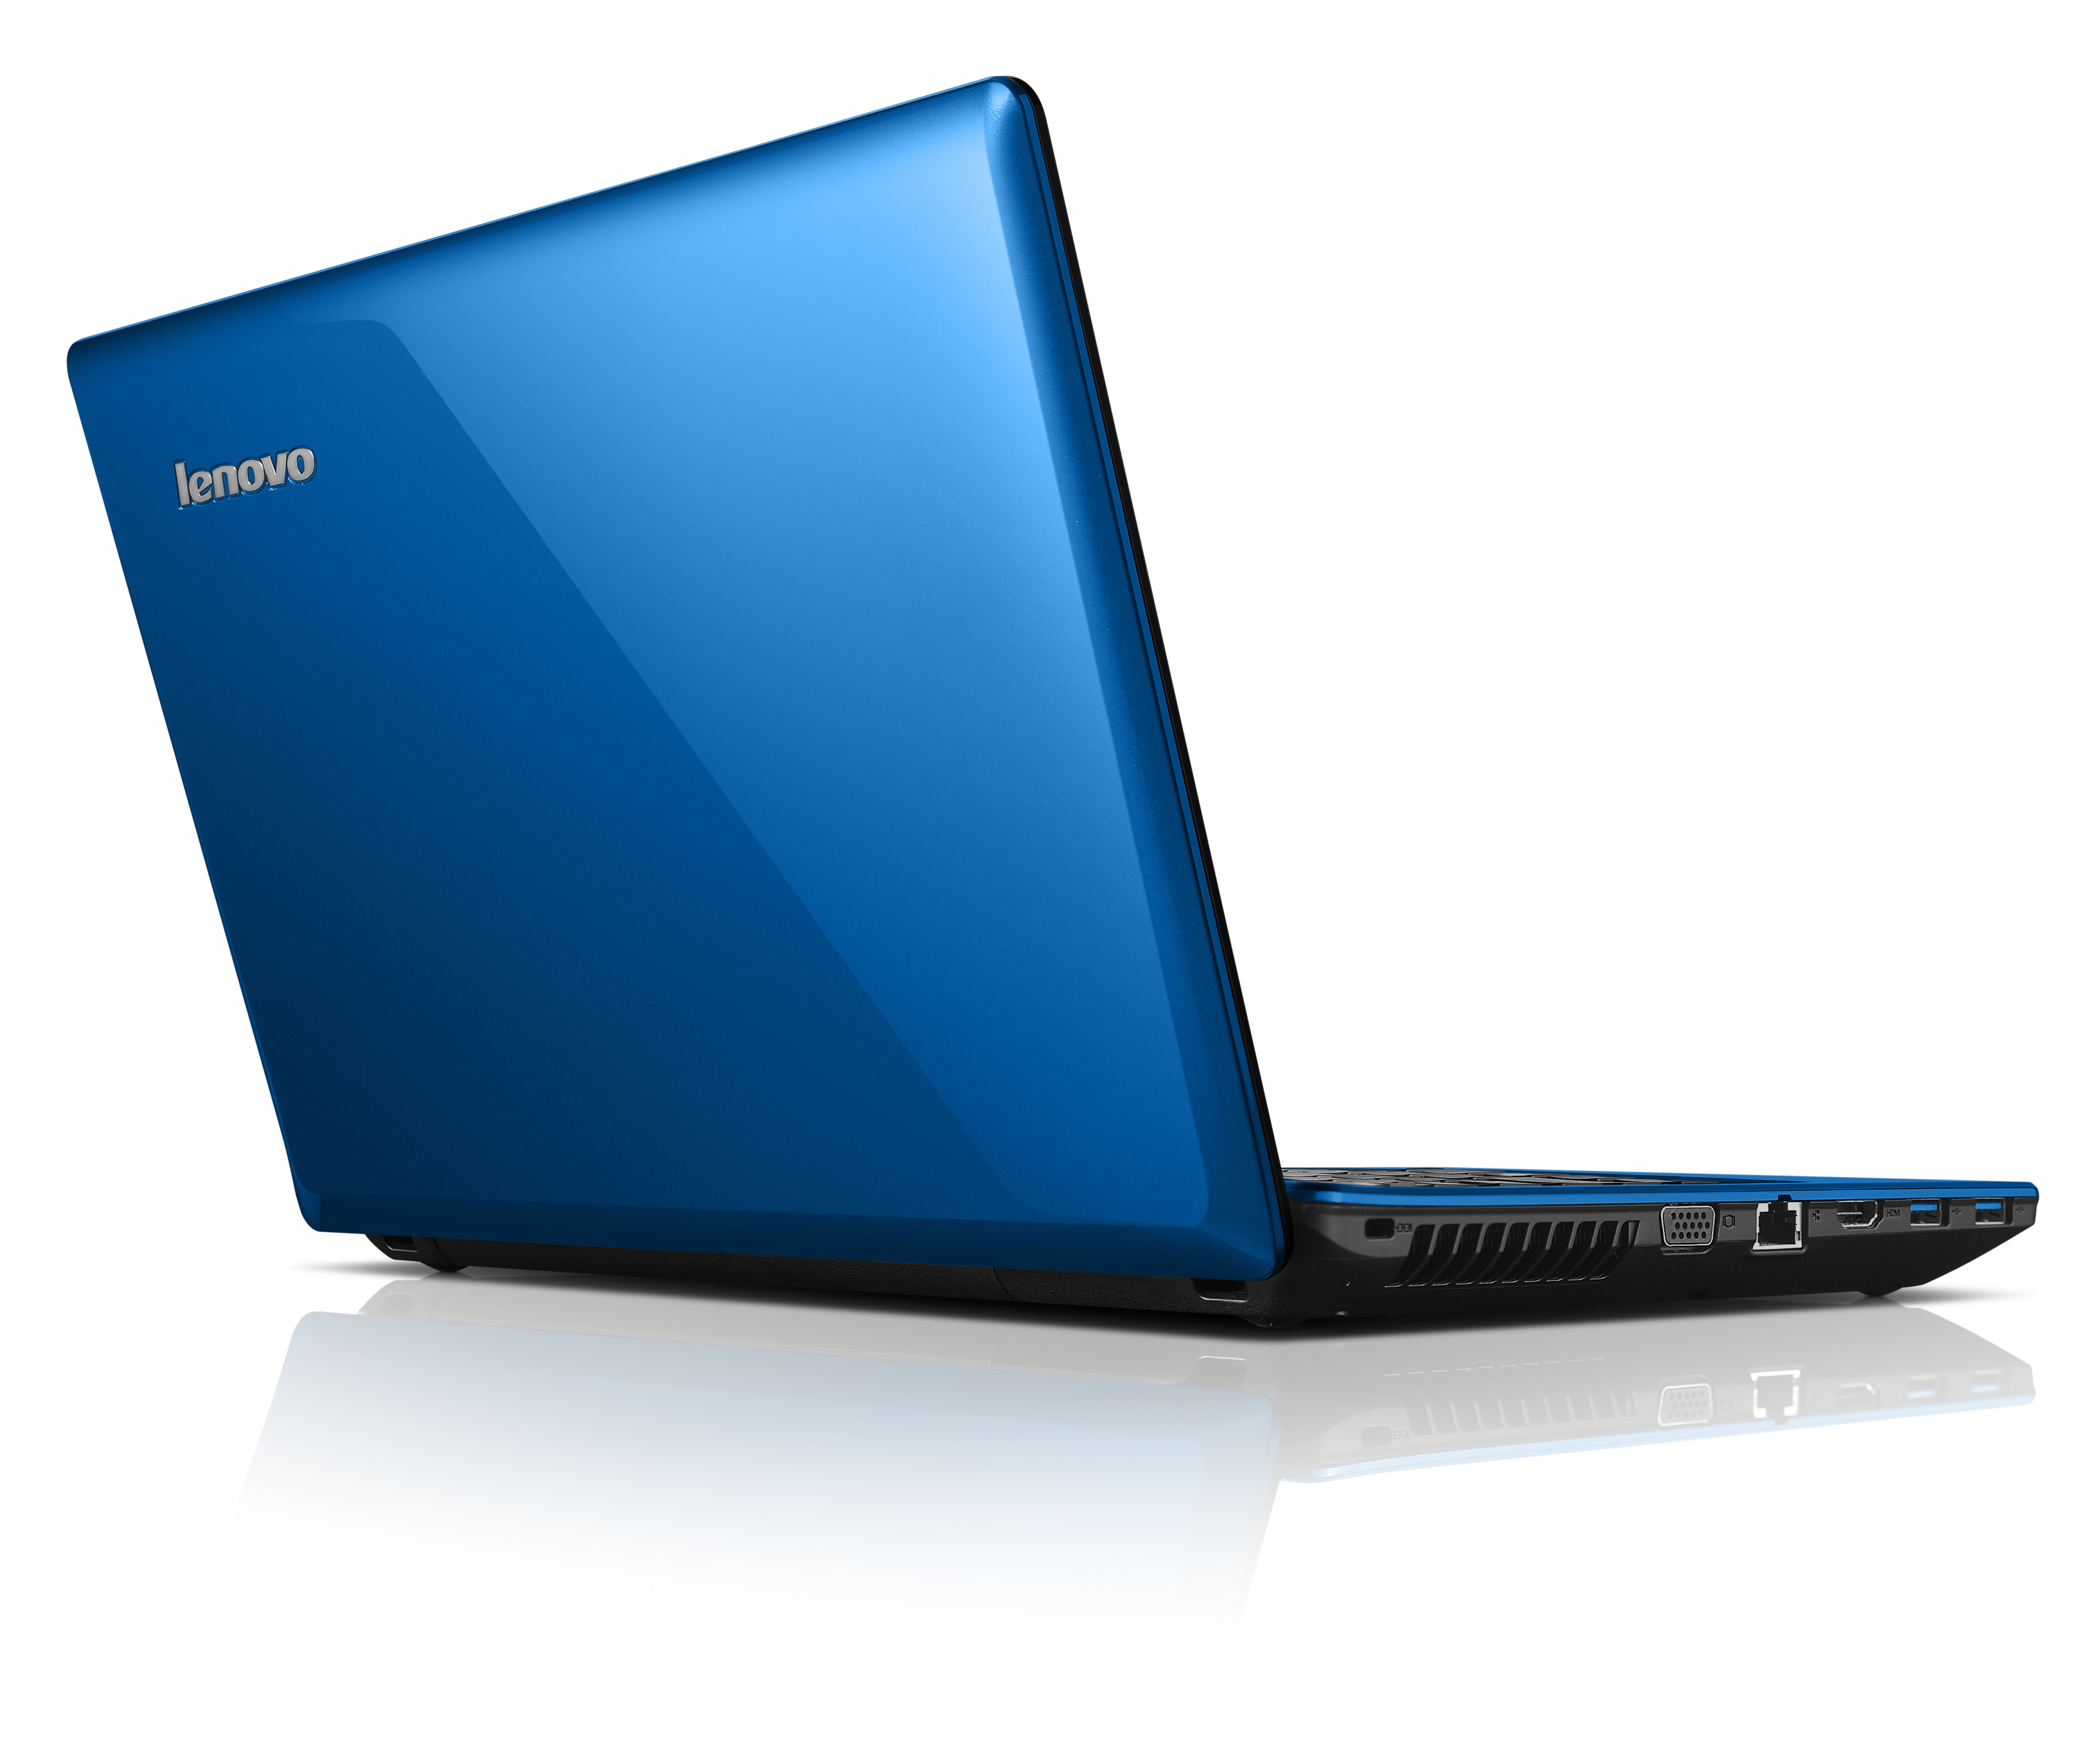 Ноутбук леново синий. Lenovo IDEAPAD g580. Ноутбук Lenovo IDEAPAD g580. Lenovo IDEAPAD g480, g580. G580 Laptop (Lenovo).